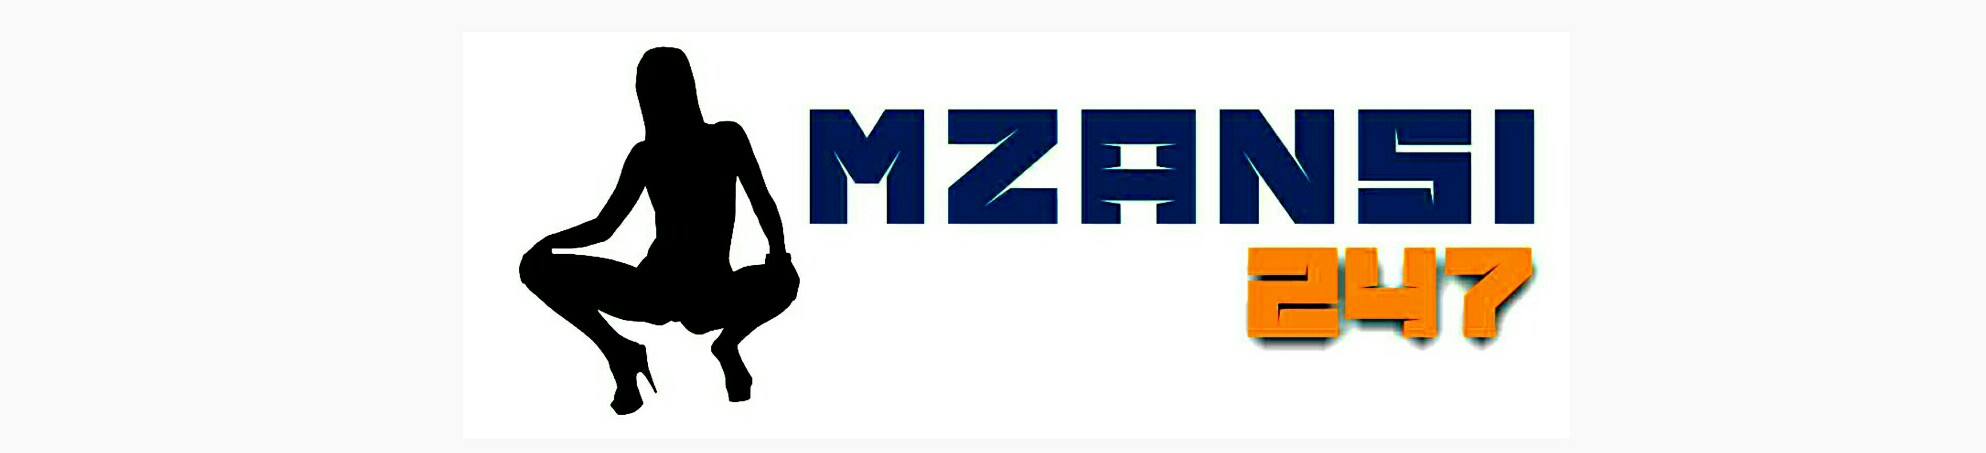 Mzansi247 WhatsApp